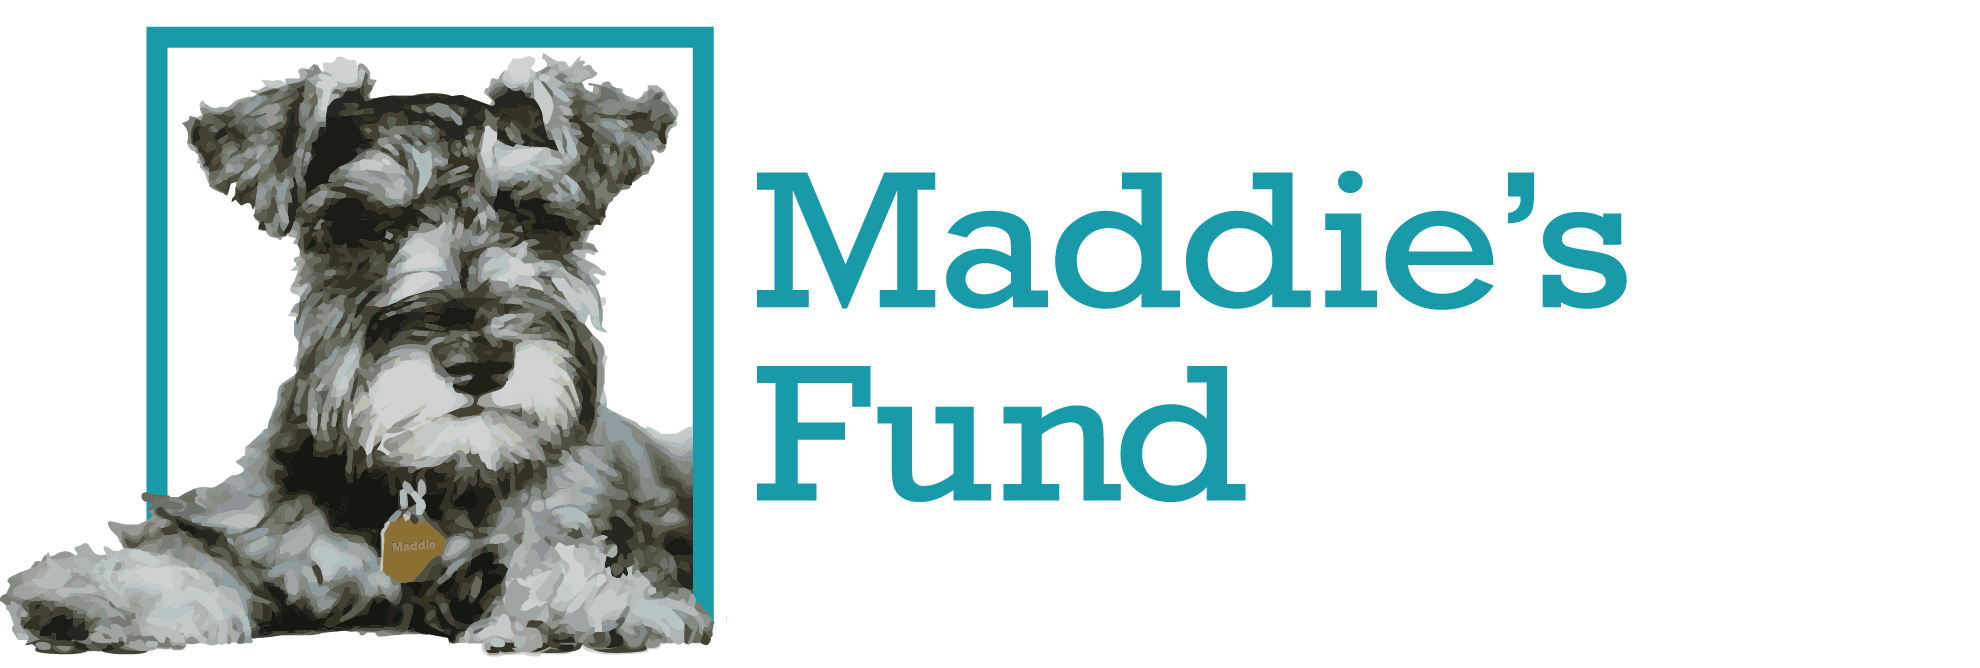 maddies fund